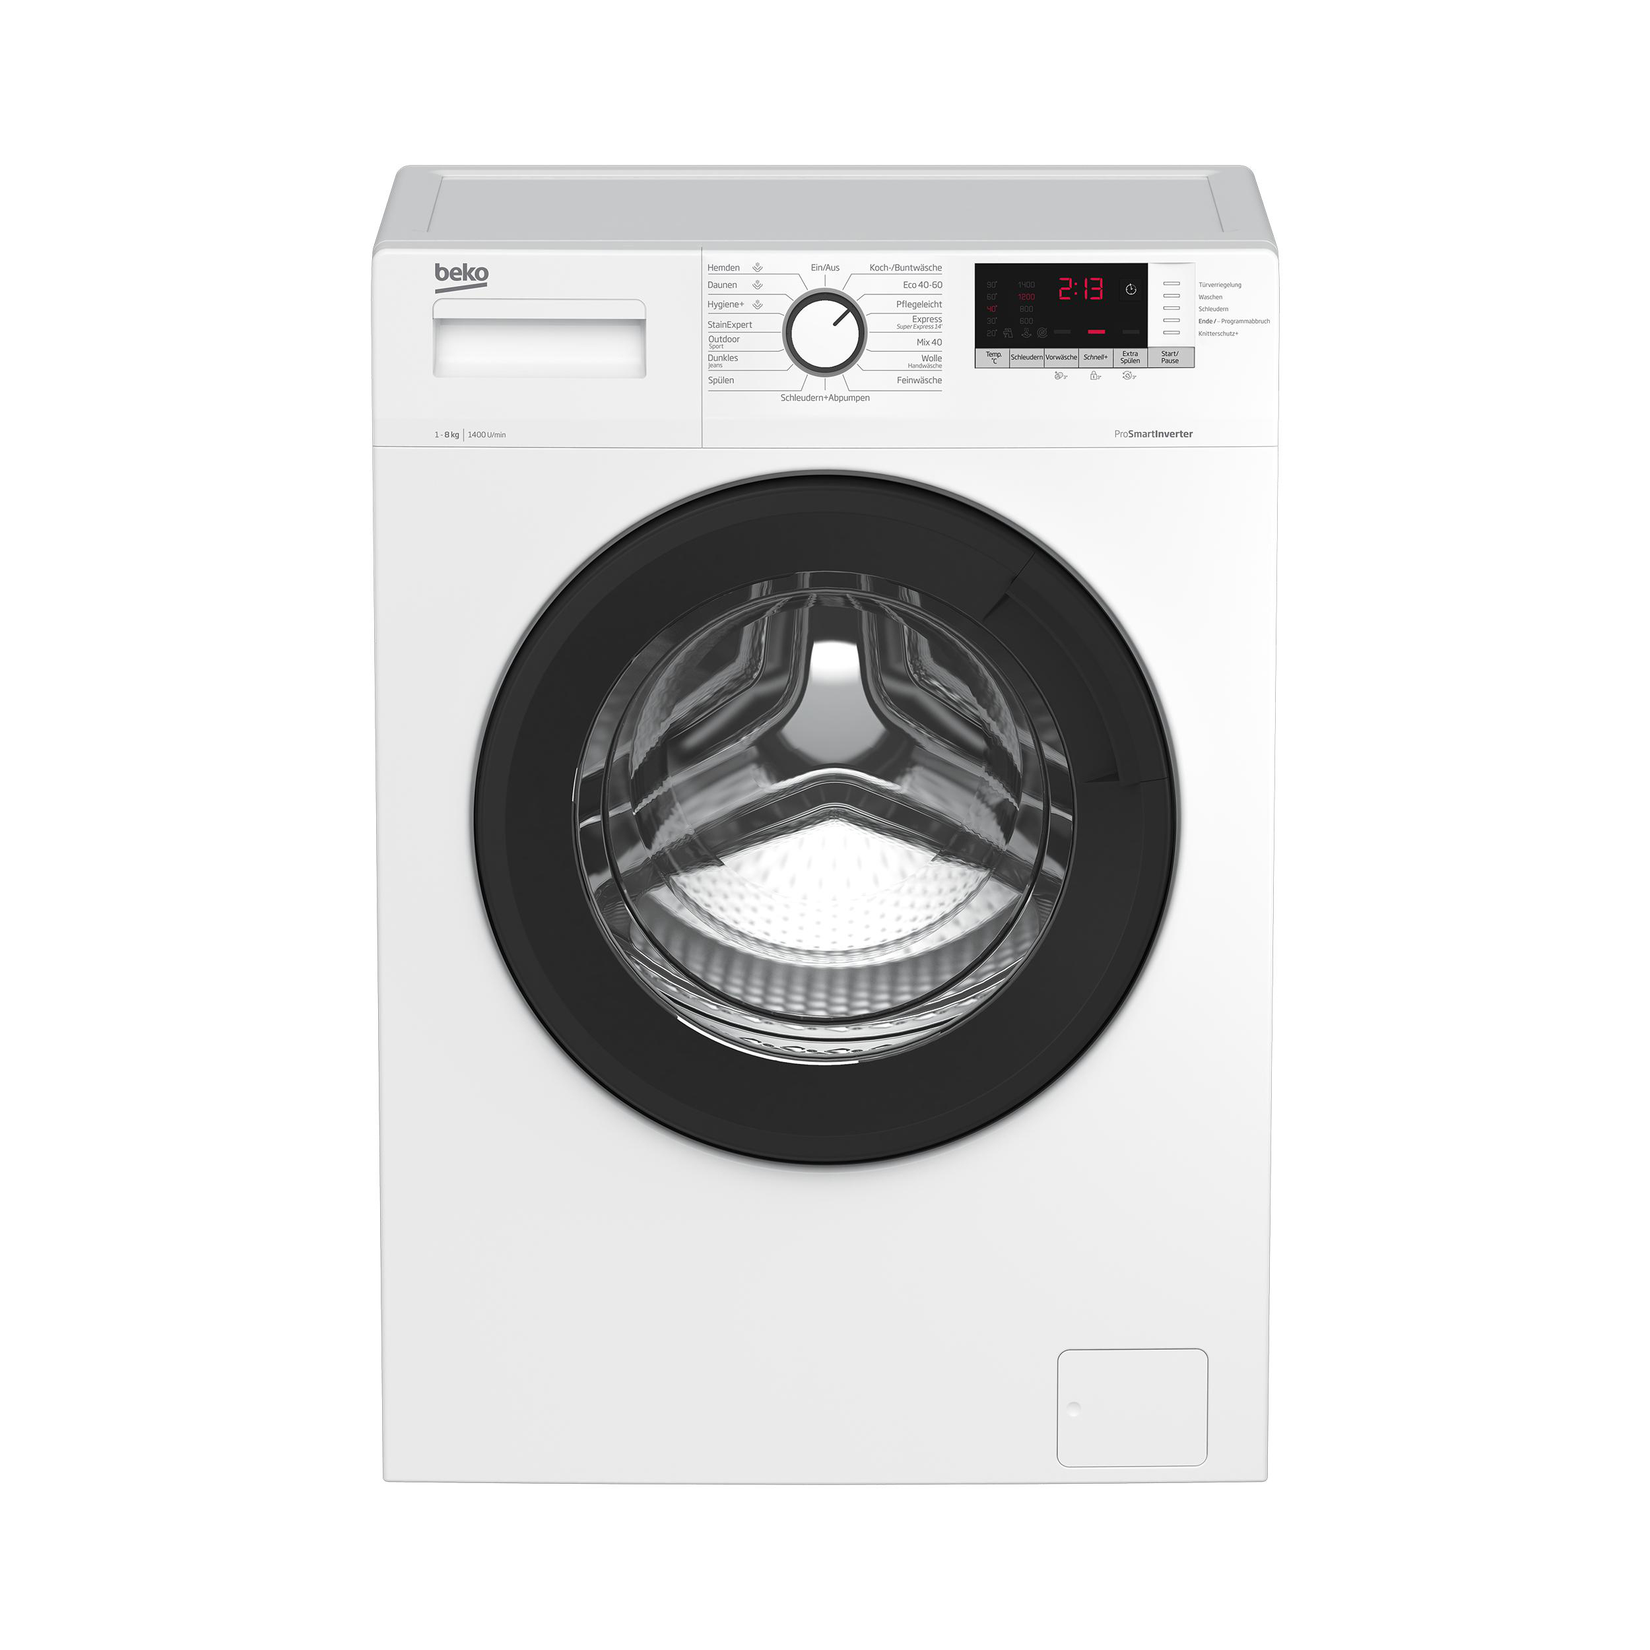 BEKO WLM81434NPSA Waschmaschine (8 kg, 1400 U/Min., A) für 399,99€ in Saturn